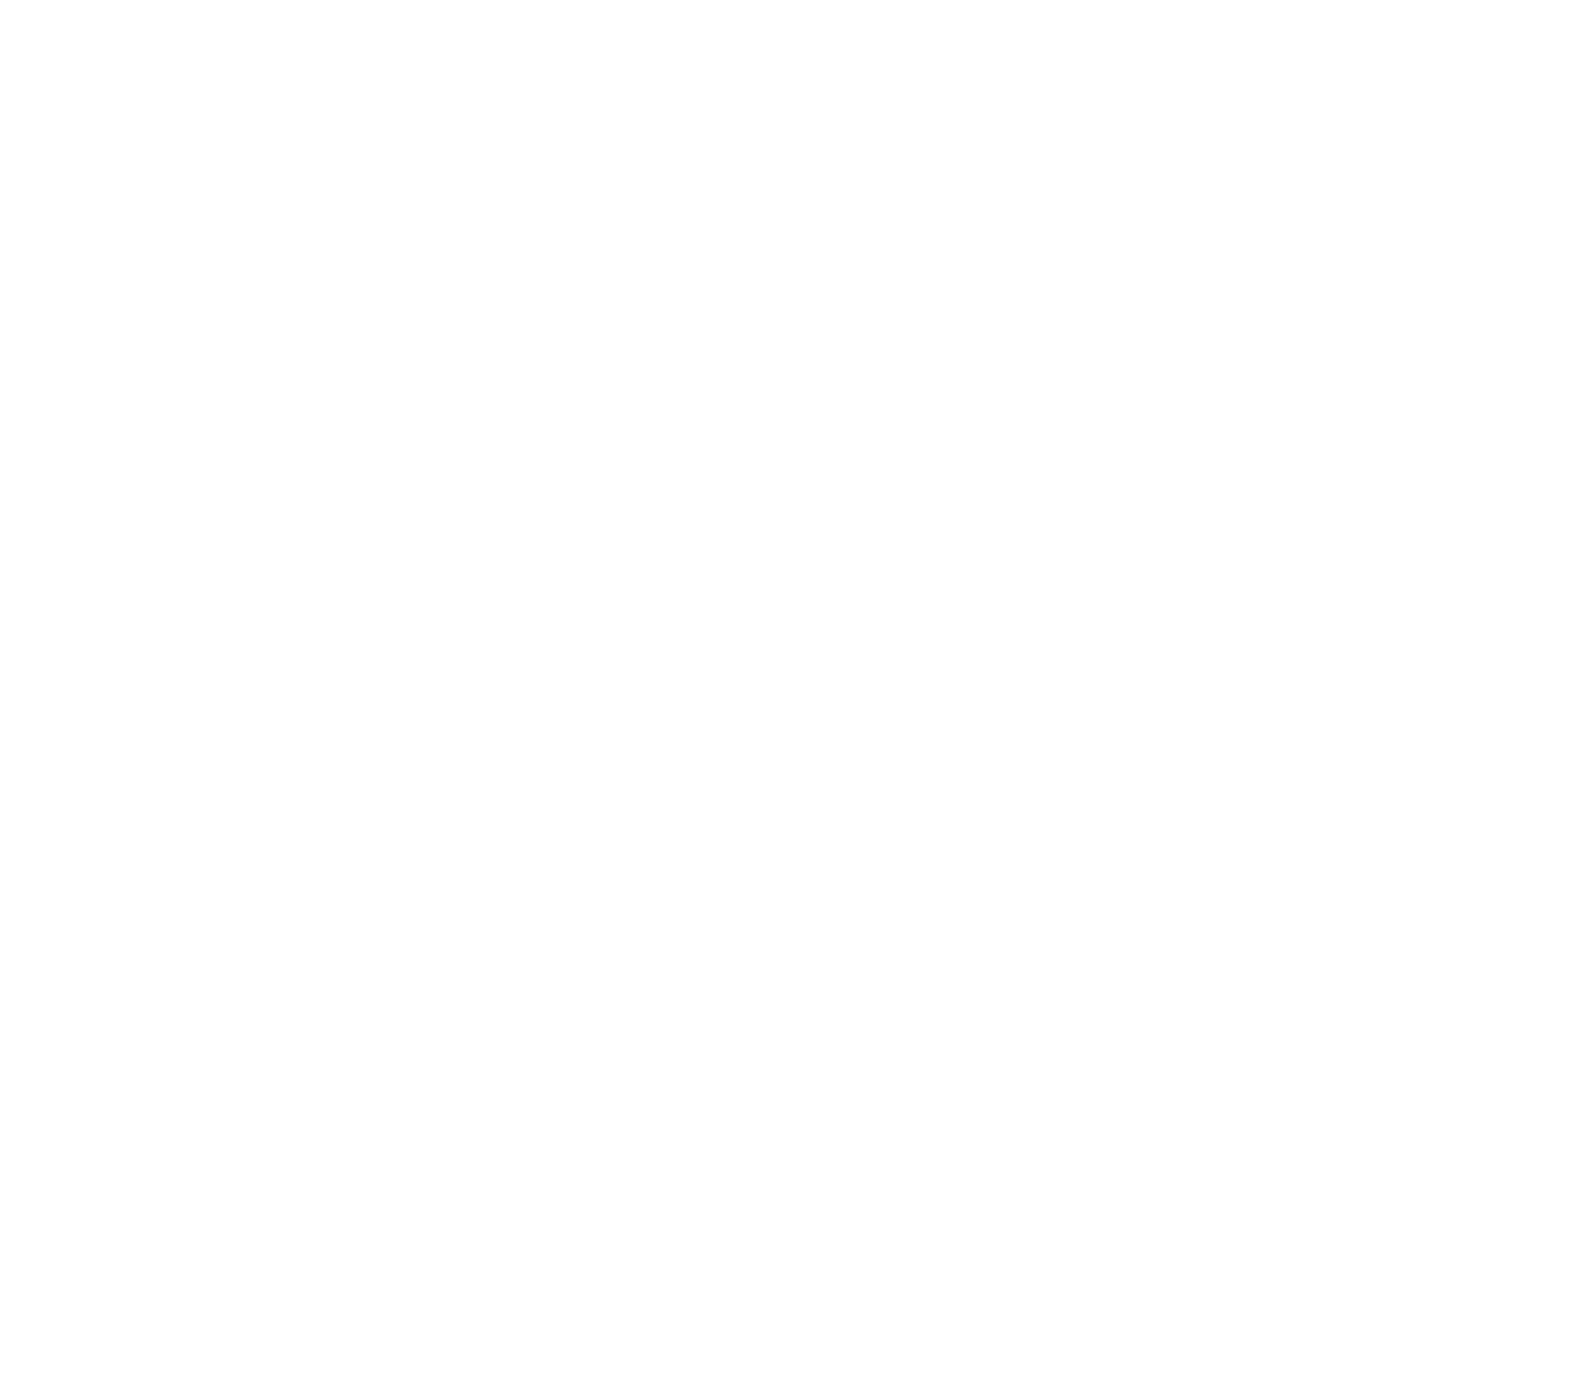 Amryt Pharma logo for dark backgrounds (transparent PNG)